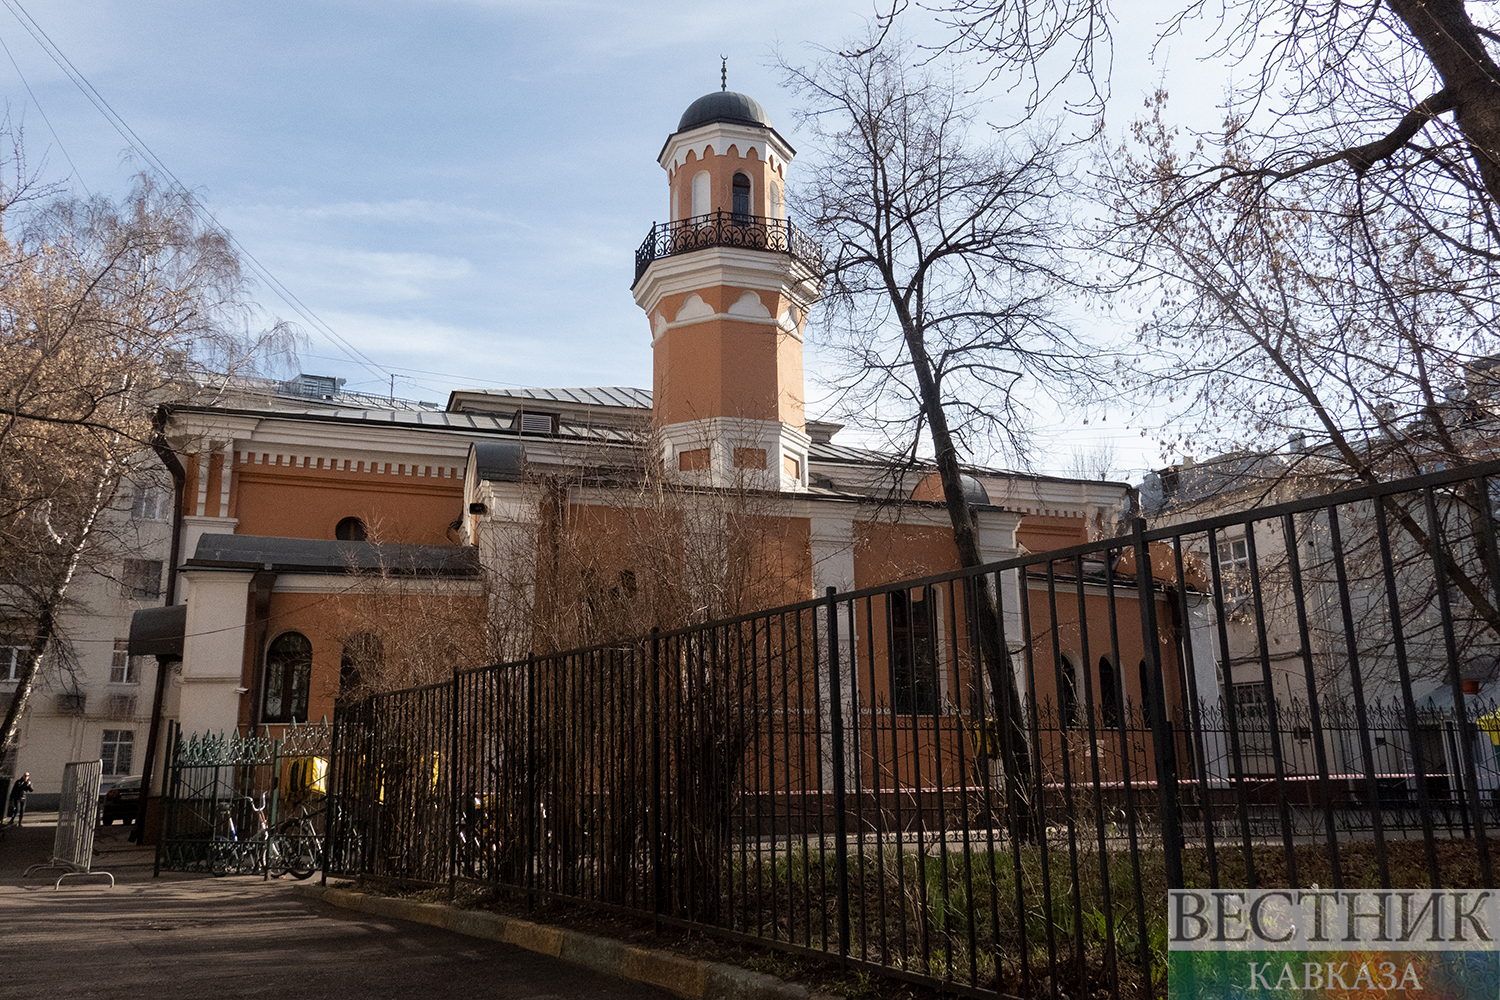 Московская историческая мечеть